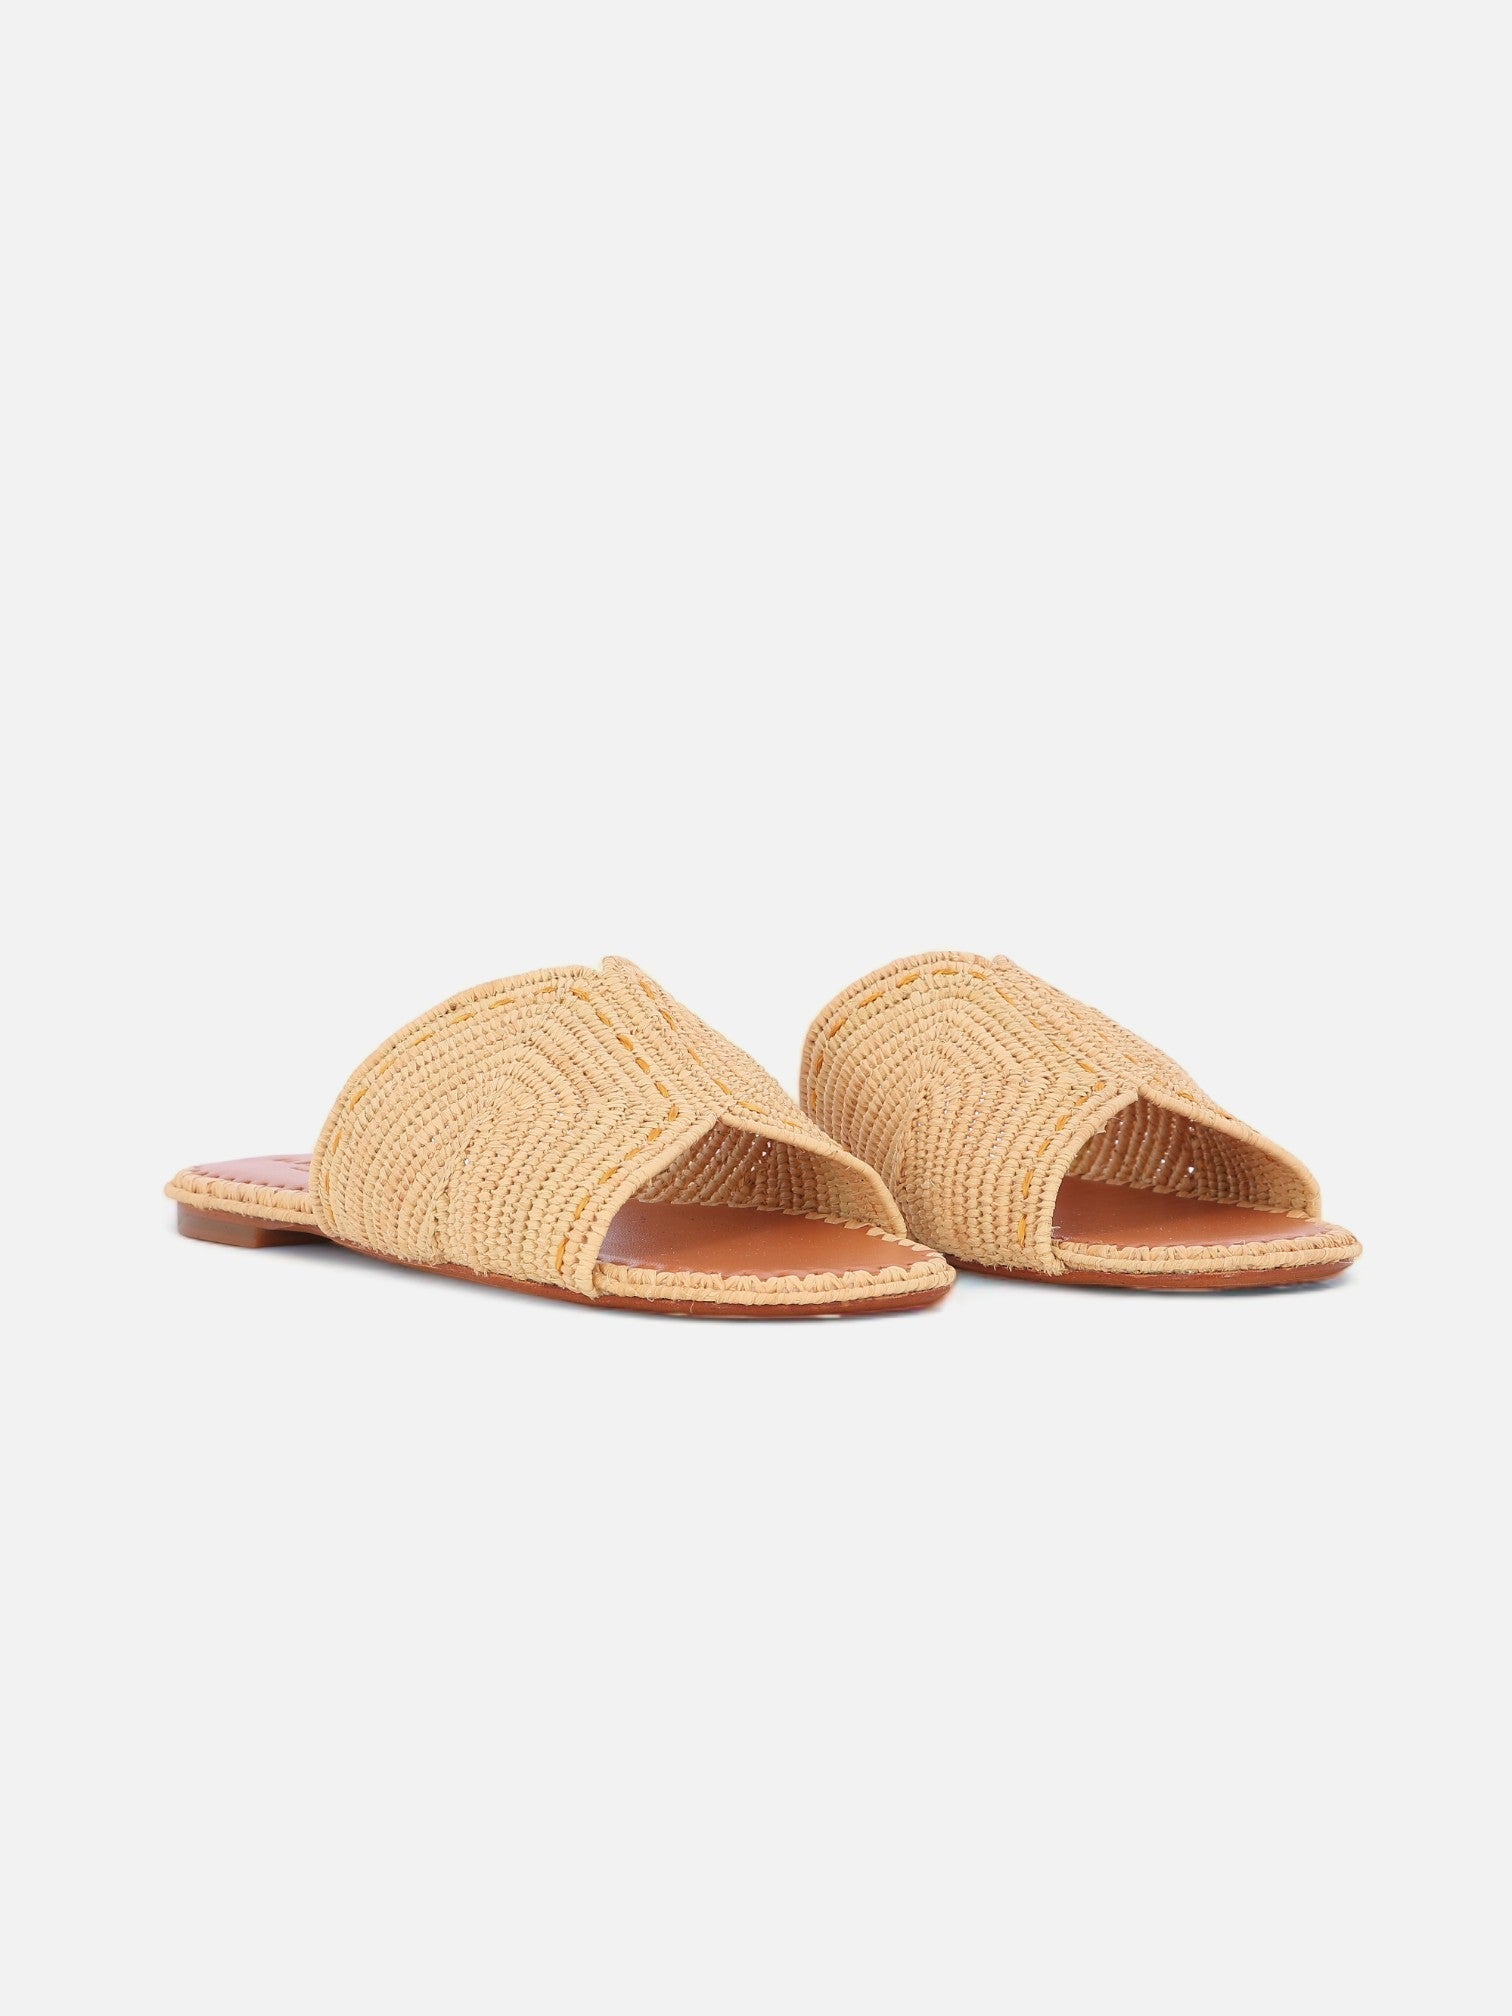 SANDALS - INENI sandals, raffia naturel - Clergerie Paris - USA